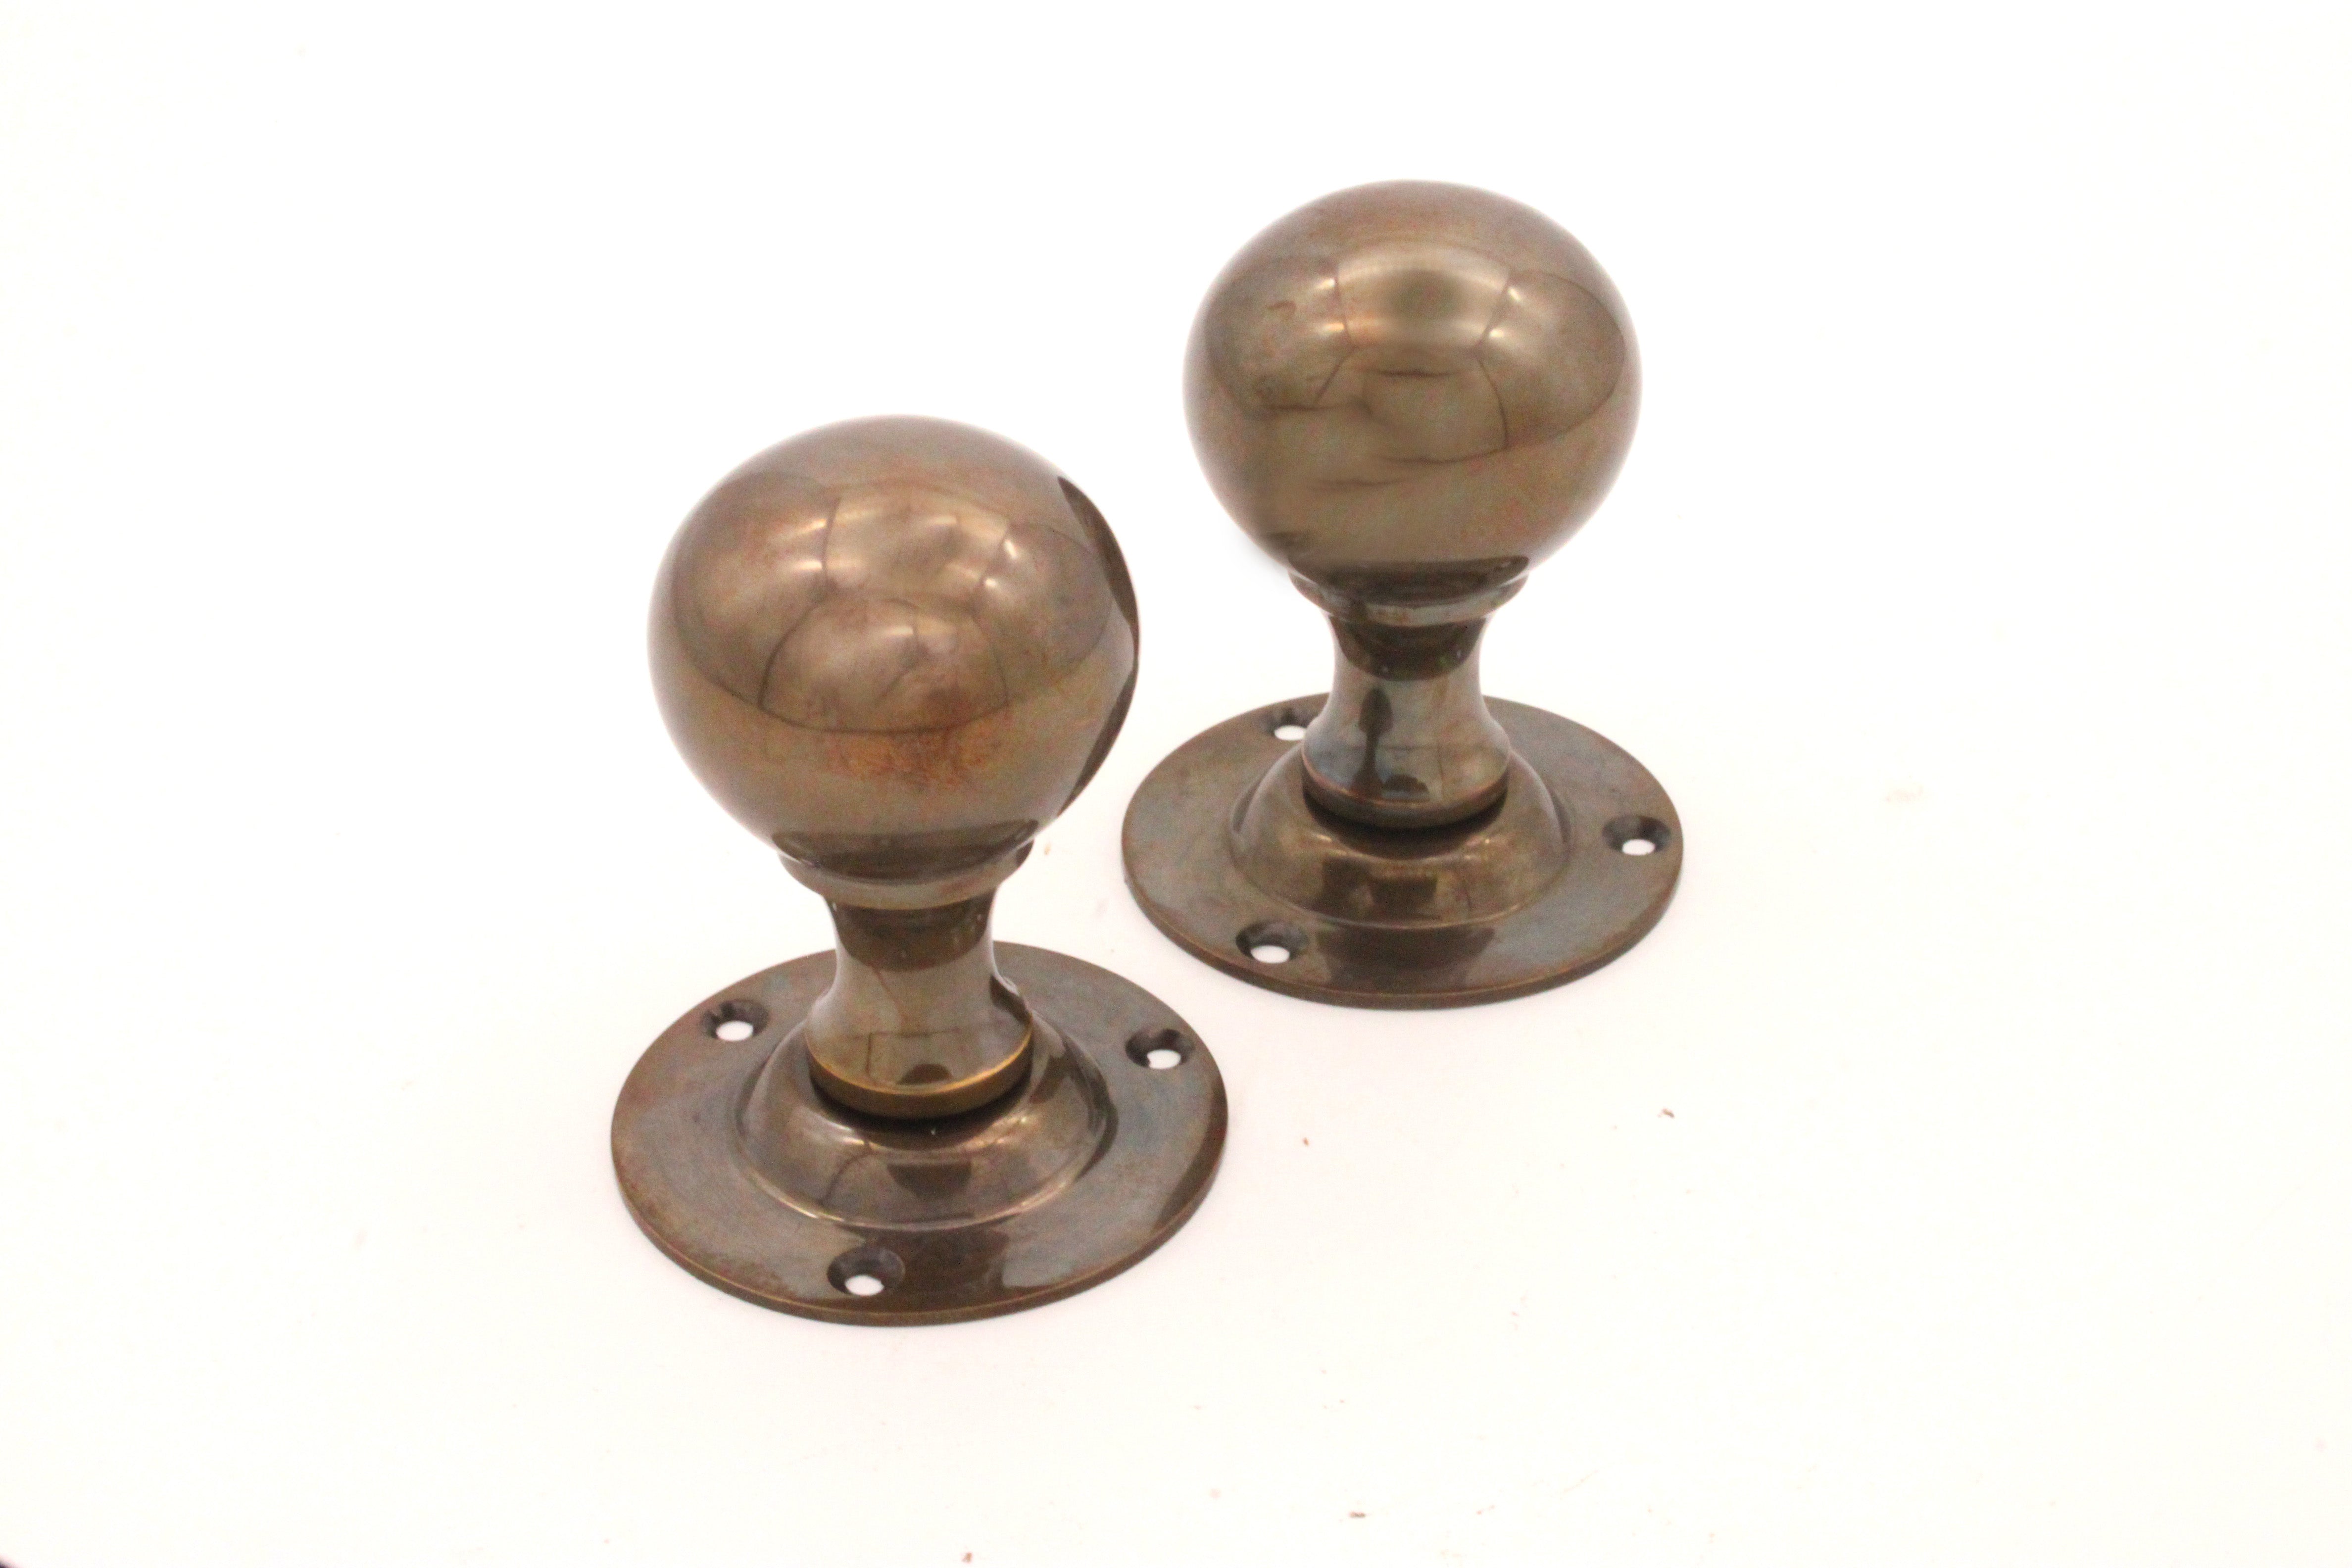 Antique Brass Ball Mortice Door Knobs (Solid Antique Brass) - SB2102AB -  More 4 Doors